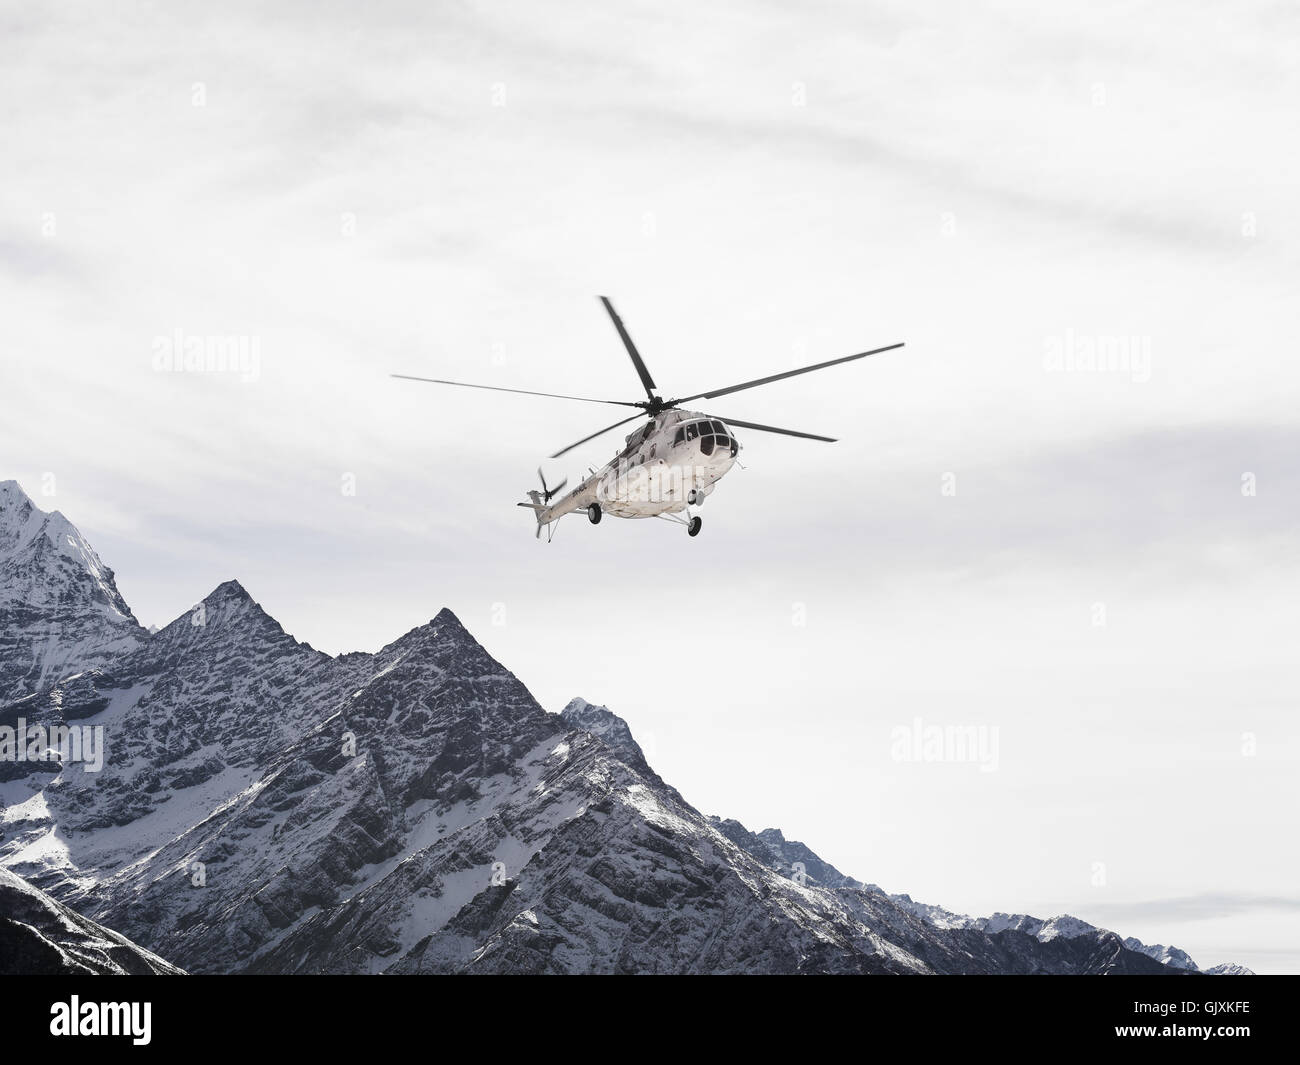 Ein Hubschrauber fliegt über die schroffen, schneebedeckten Berge Nepals Everest Base Camp Stockfoto